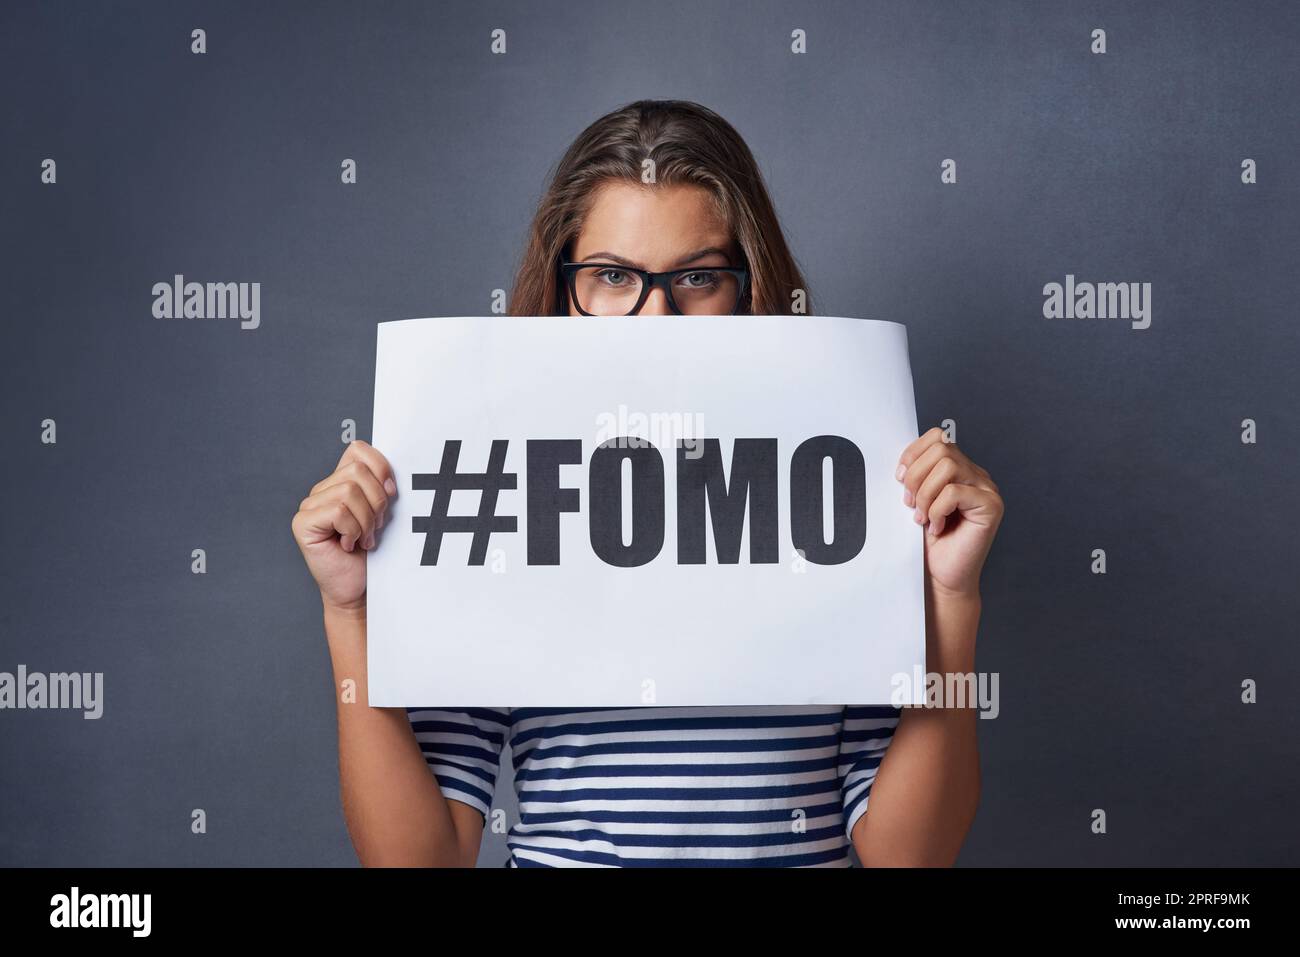 Se il suo successo voglio essere parte di esso. Foto studio di una giovane donna attraente con un cartello con su scritto FOMO su sfondo grigio. Foto Stock